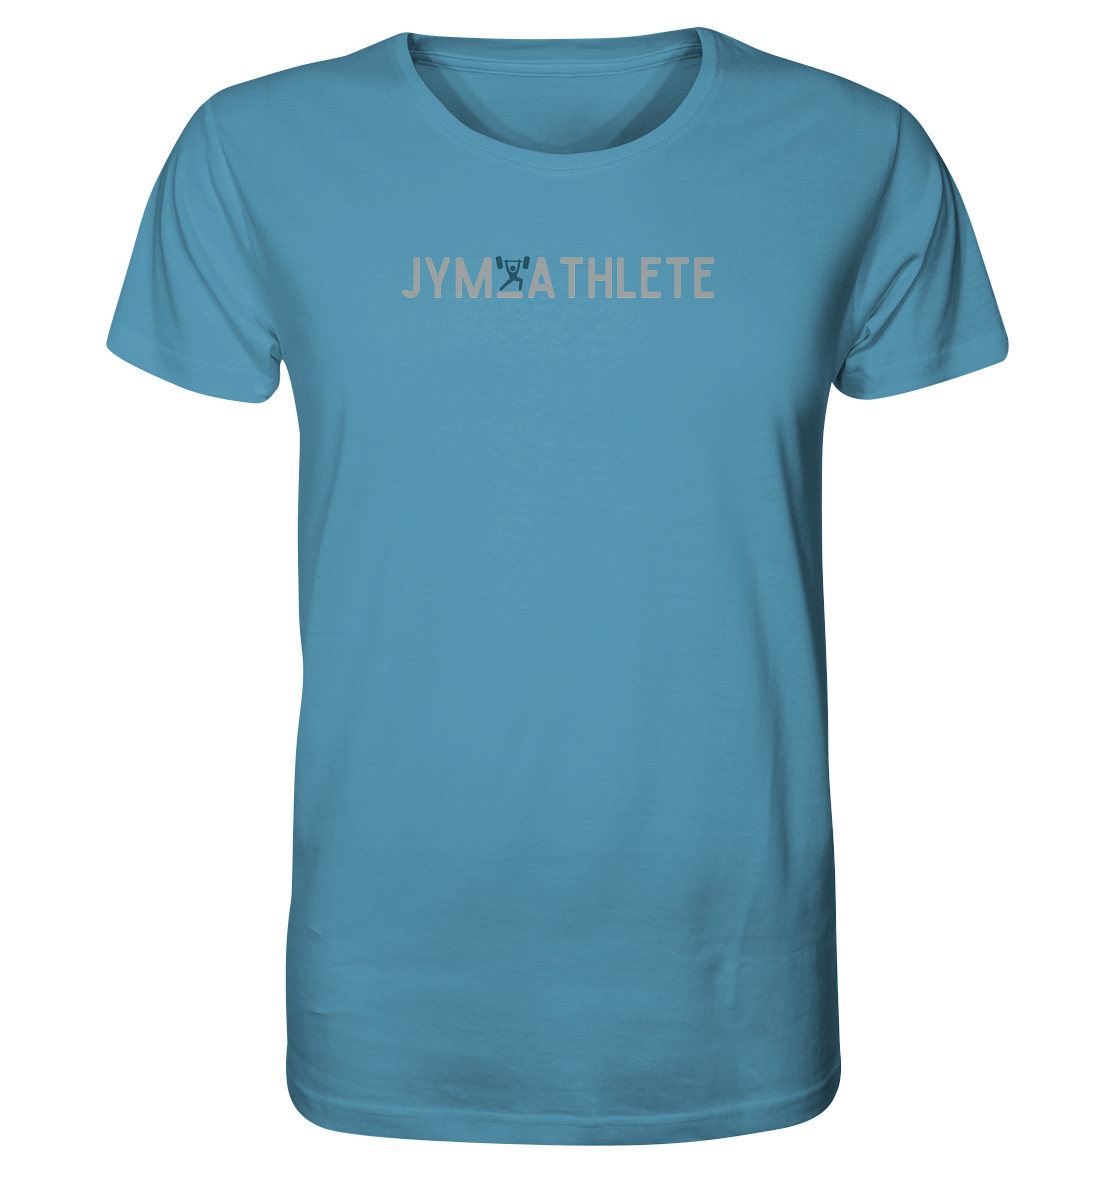 Jym Athlete #Thin14